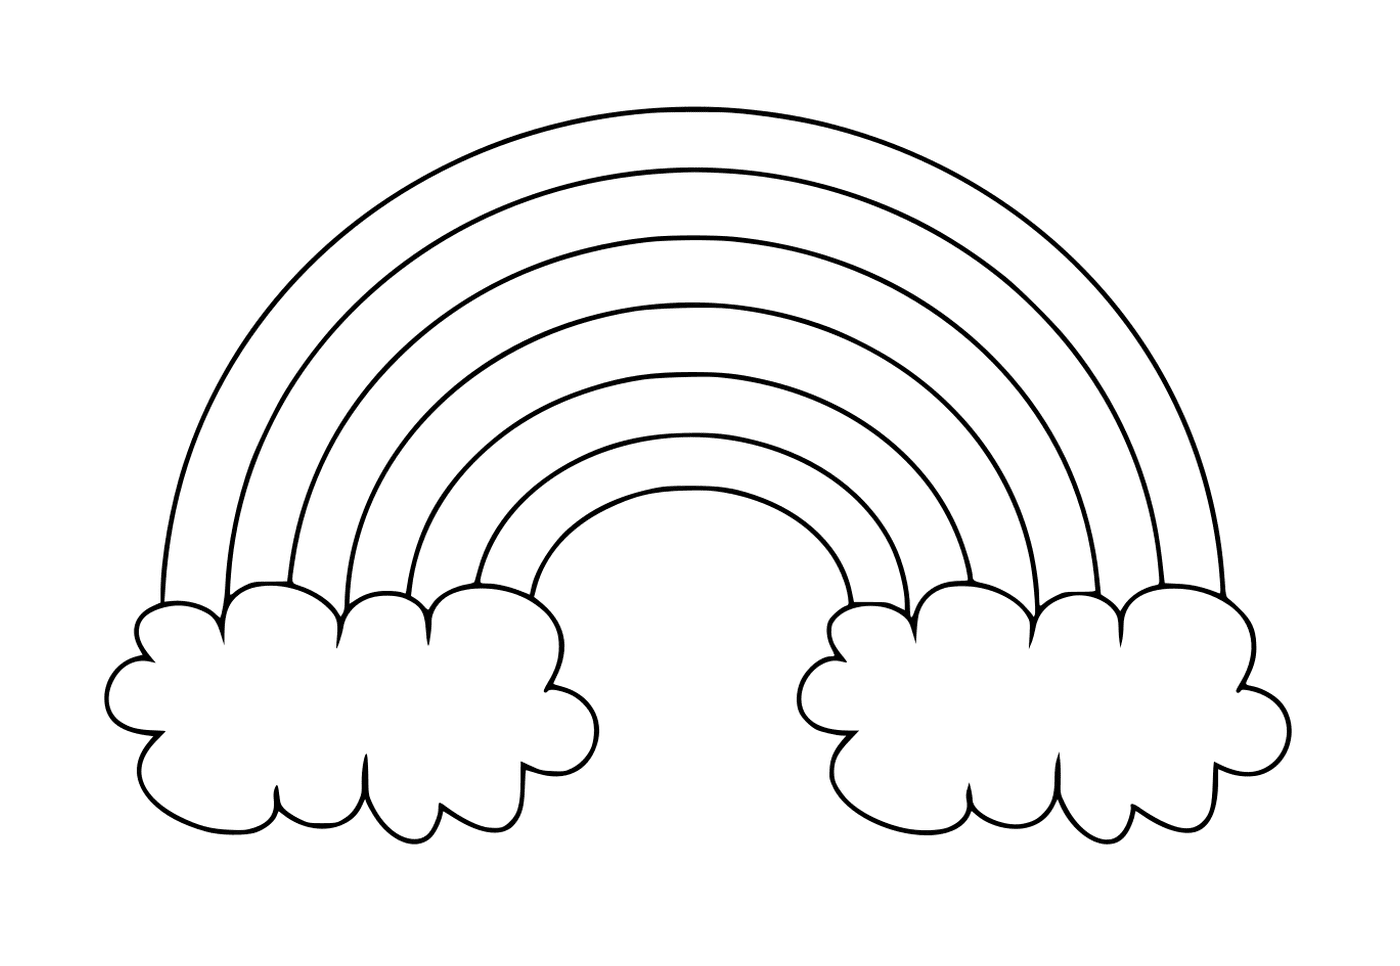   Un arc-en-ciel simple avec deux nuages 